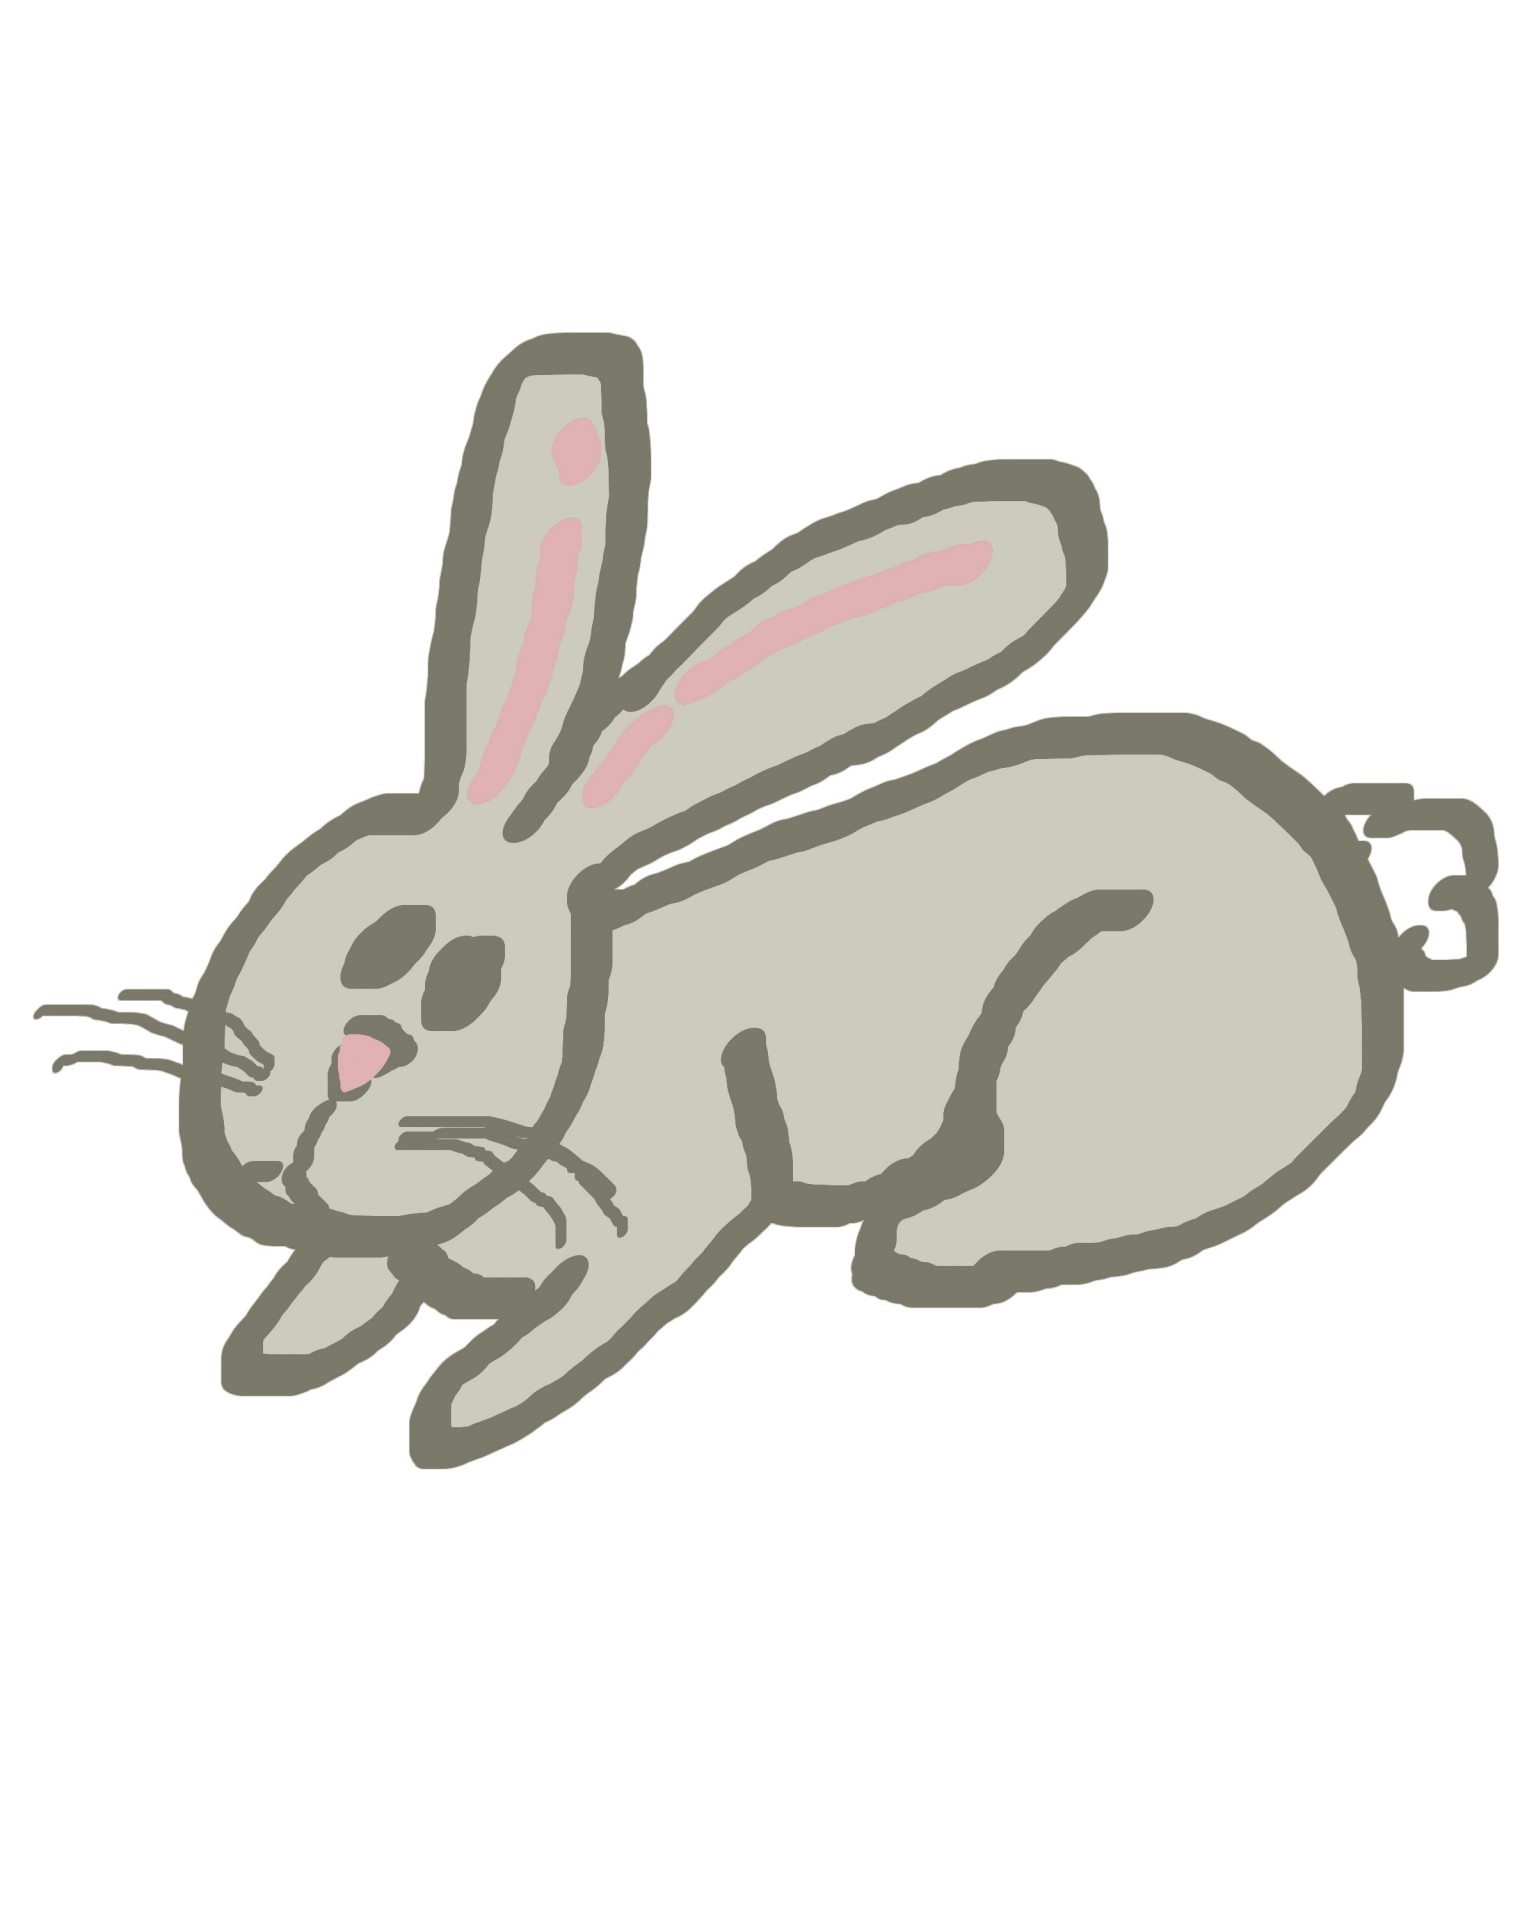 simple-rabbit-doodle-2-free-stock-photo-public-domain-pictures